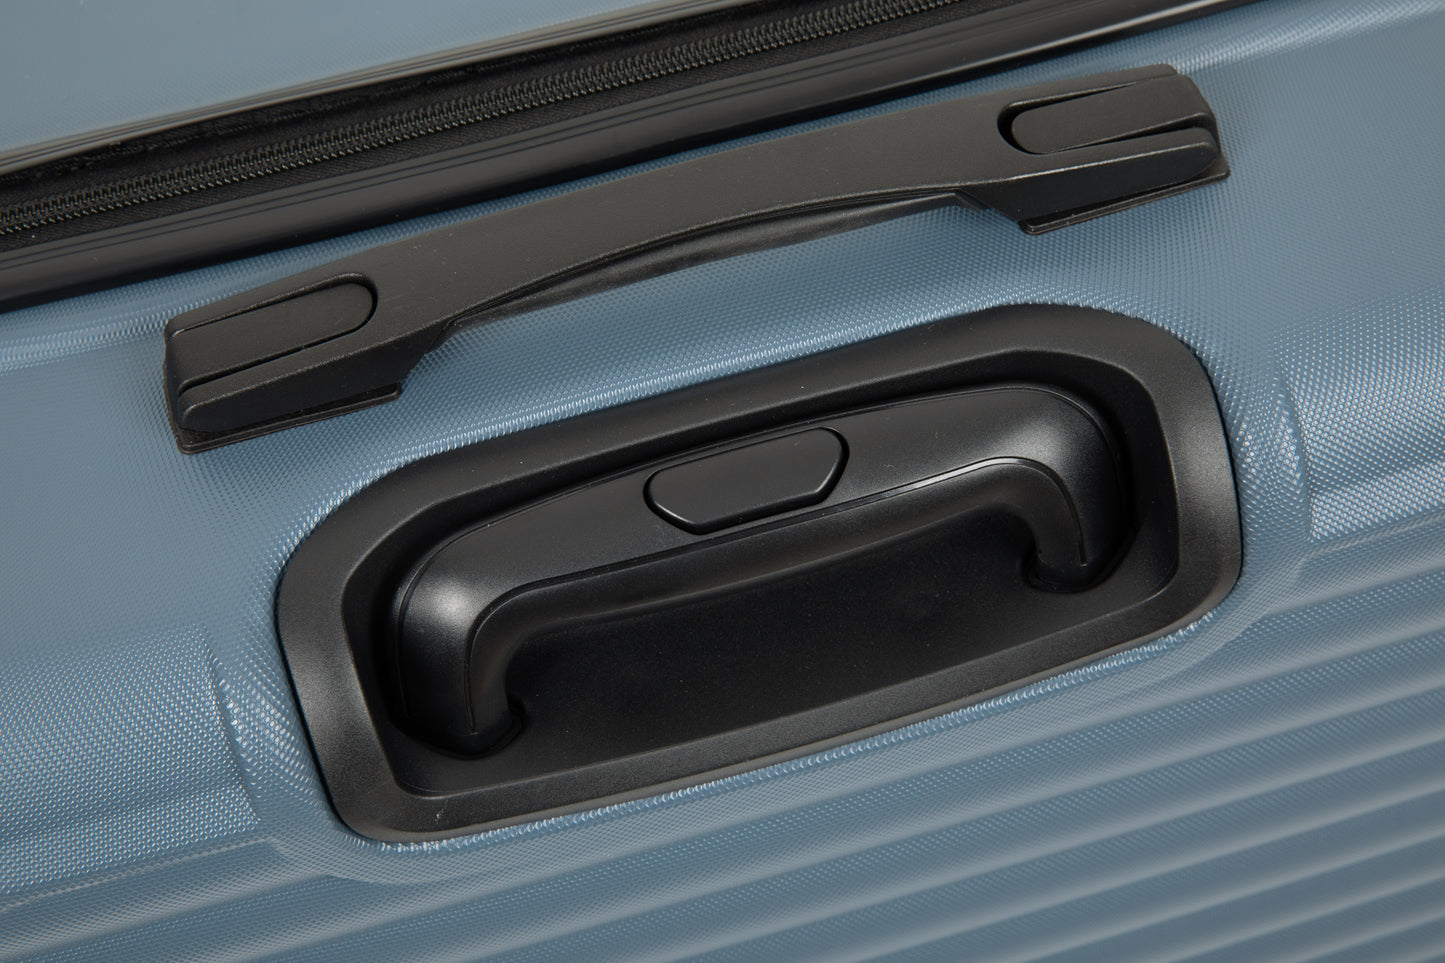 Ensembles de bagages 3 pièces Valise légère en ABS avec deux crochets, roues pivotantes, serrure TSA, (20/24/28) bleu